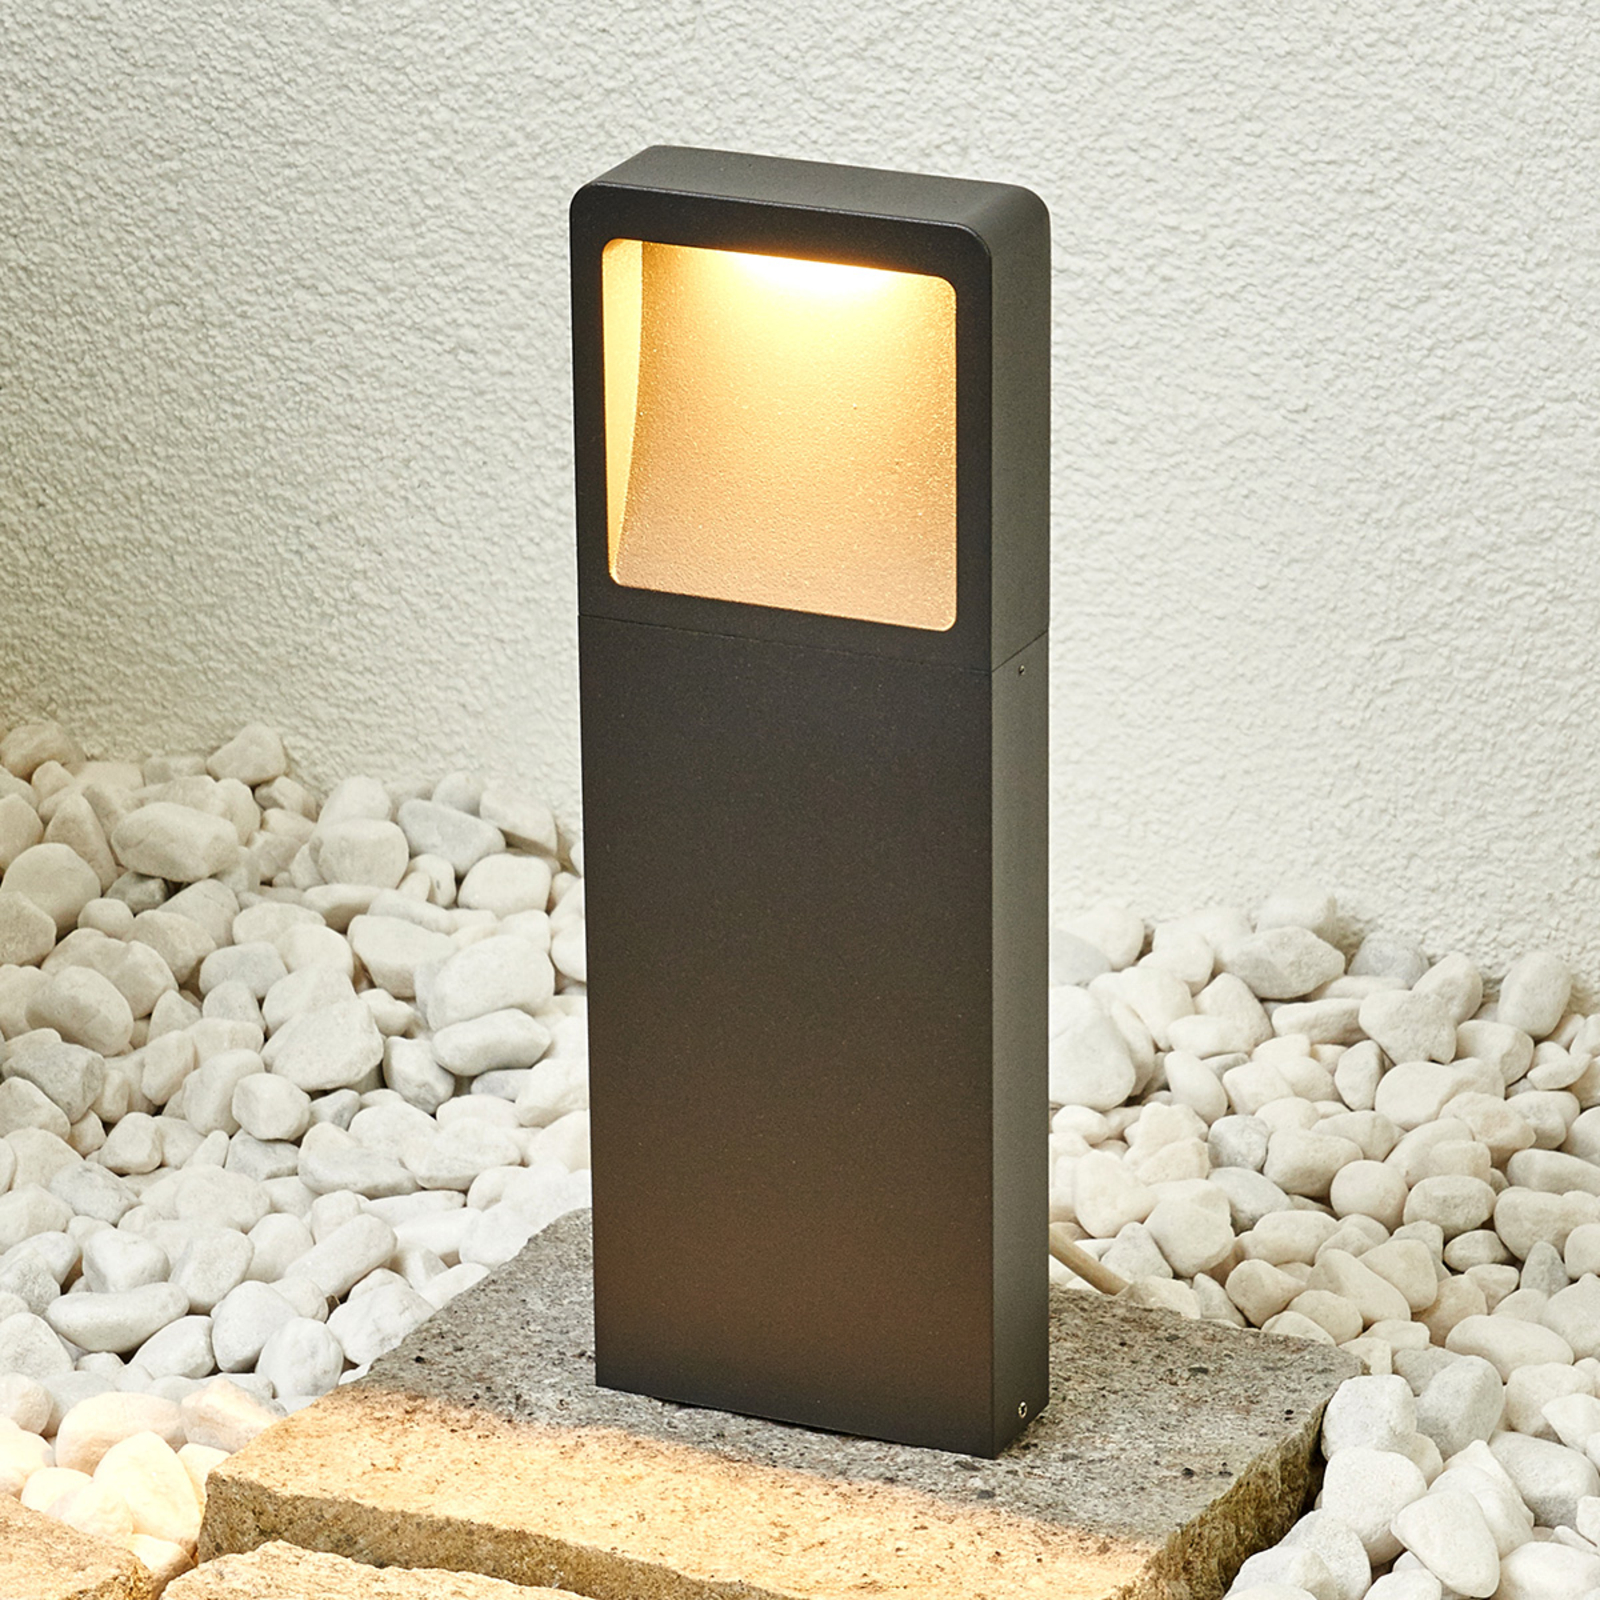 ELC Lavoki lampa cokołowa LED, odlew aluminiowy